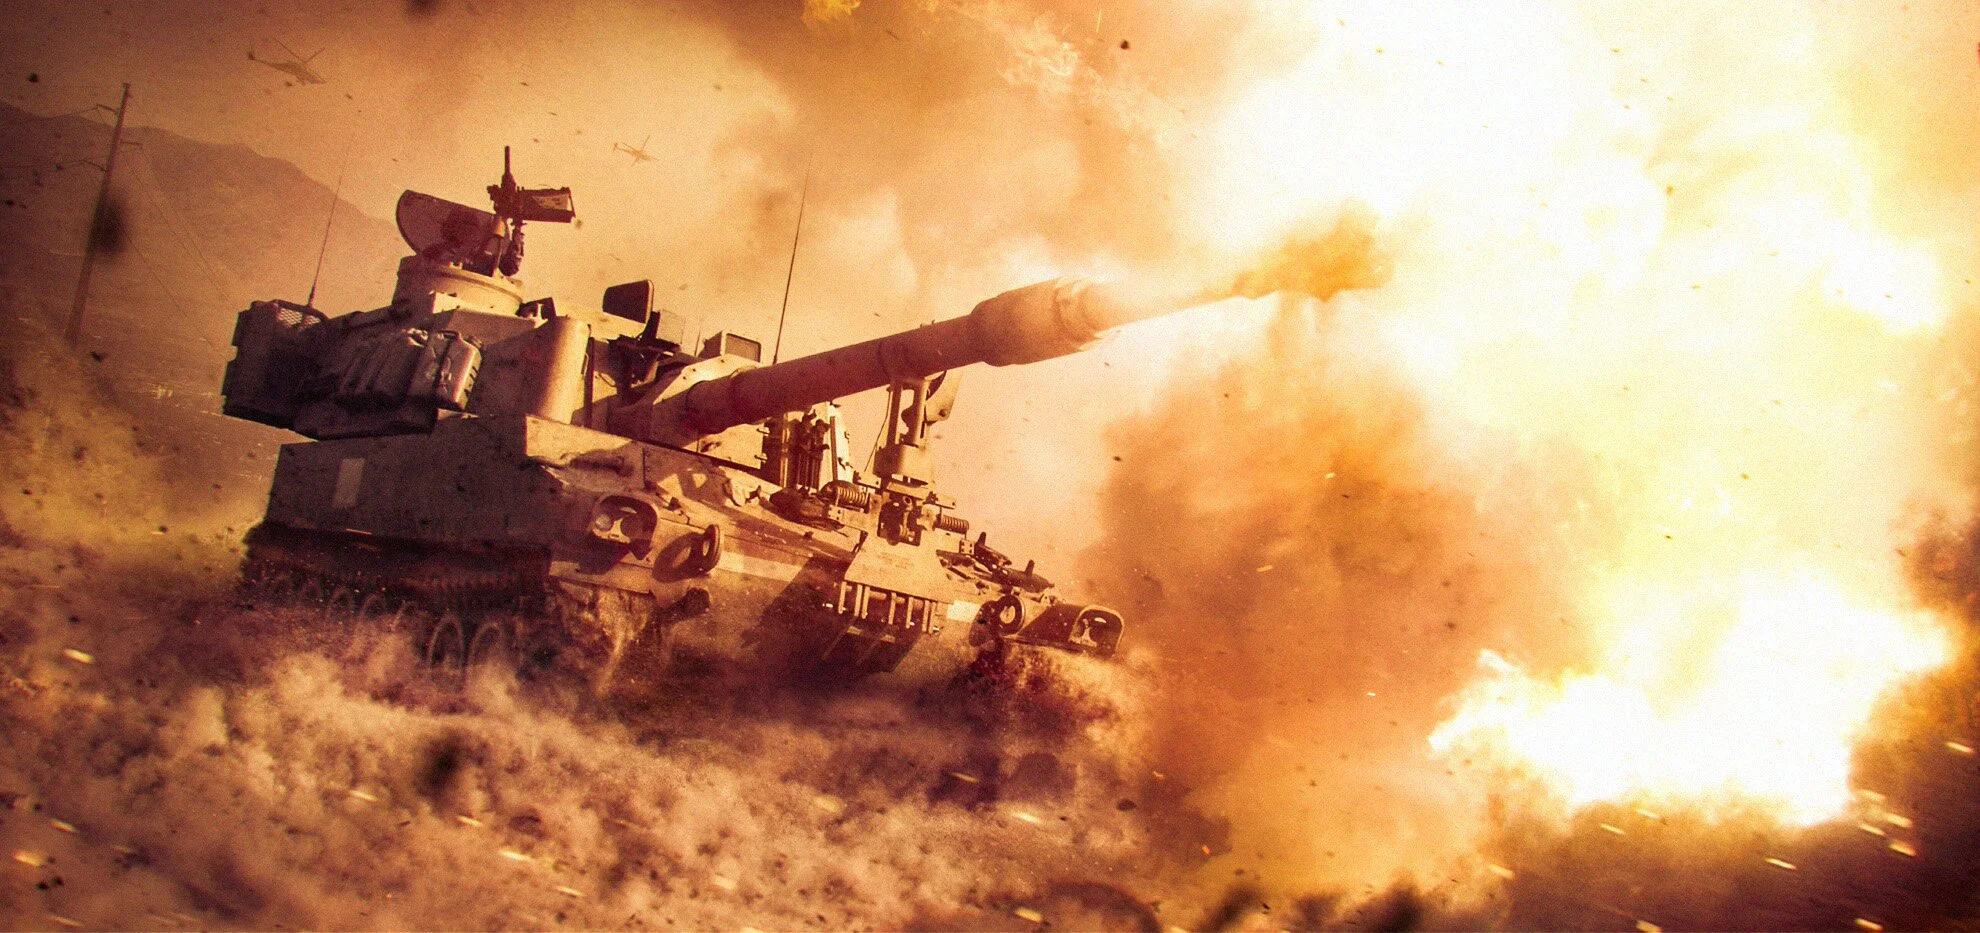 Специально ко Дню защитника Отечества мы сравнили настоящие танки, преодолевающие непростые участки полей с аналогичными моделями из игры Armored Warfare: Проект Армата. Смотрите, что из этого получилось!